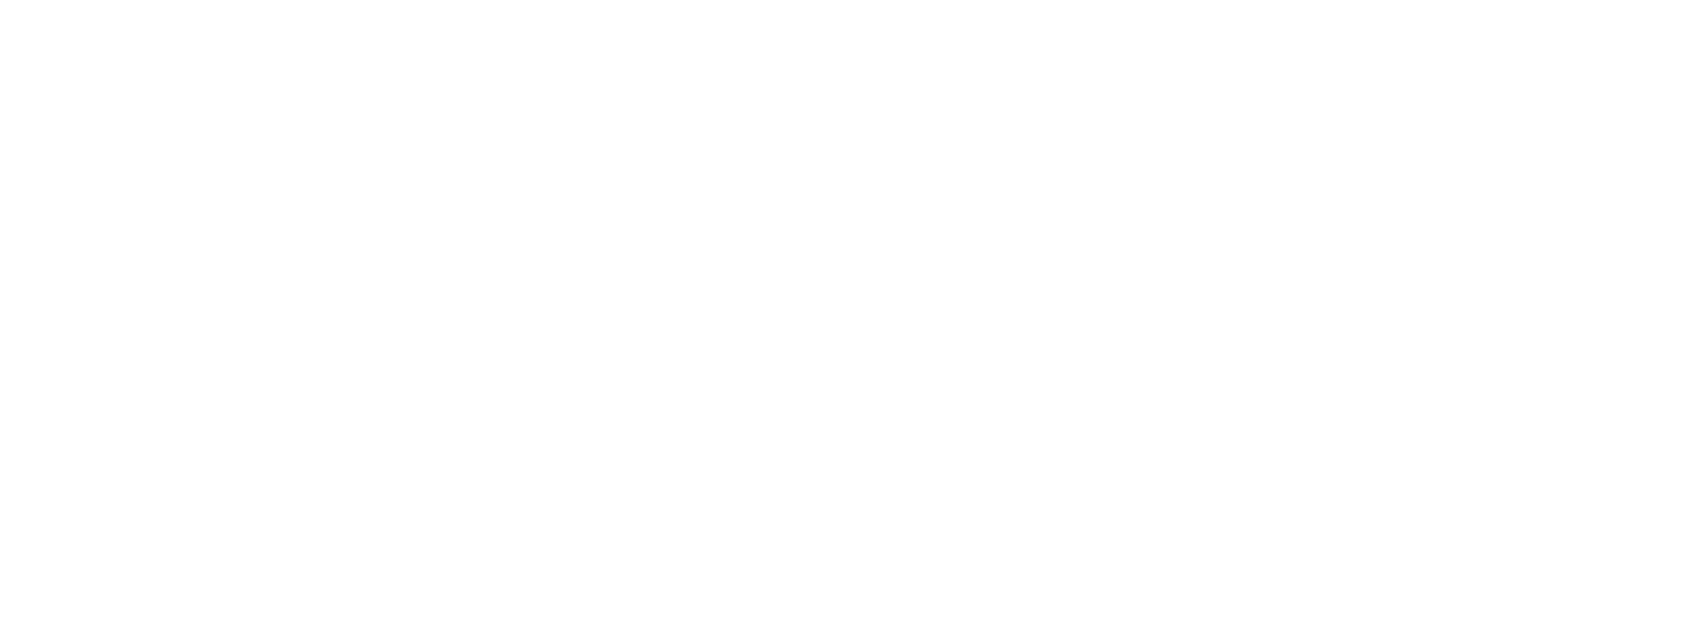 jobcan-logo_英字_white